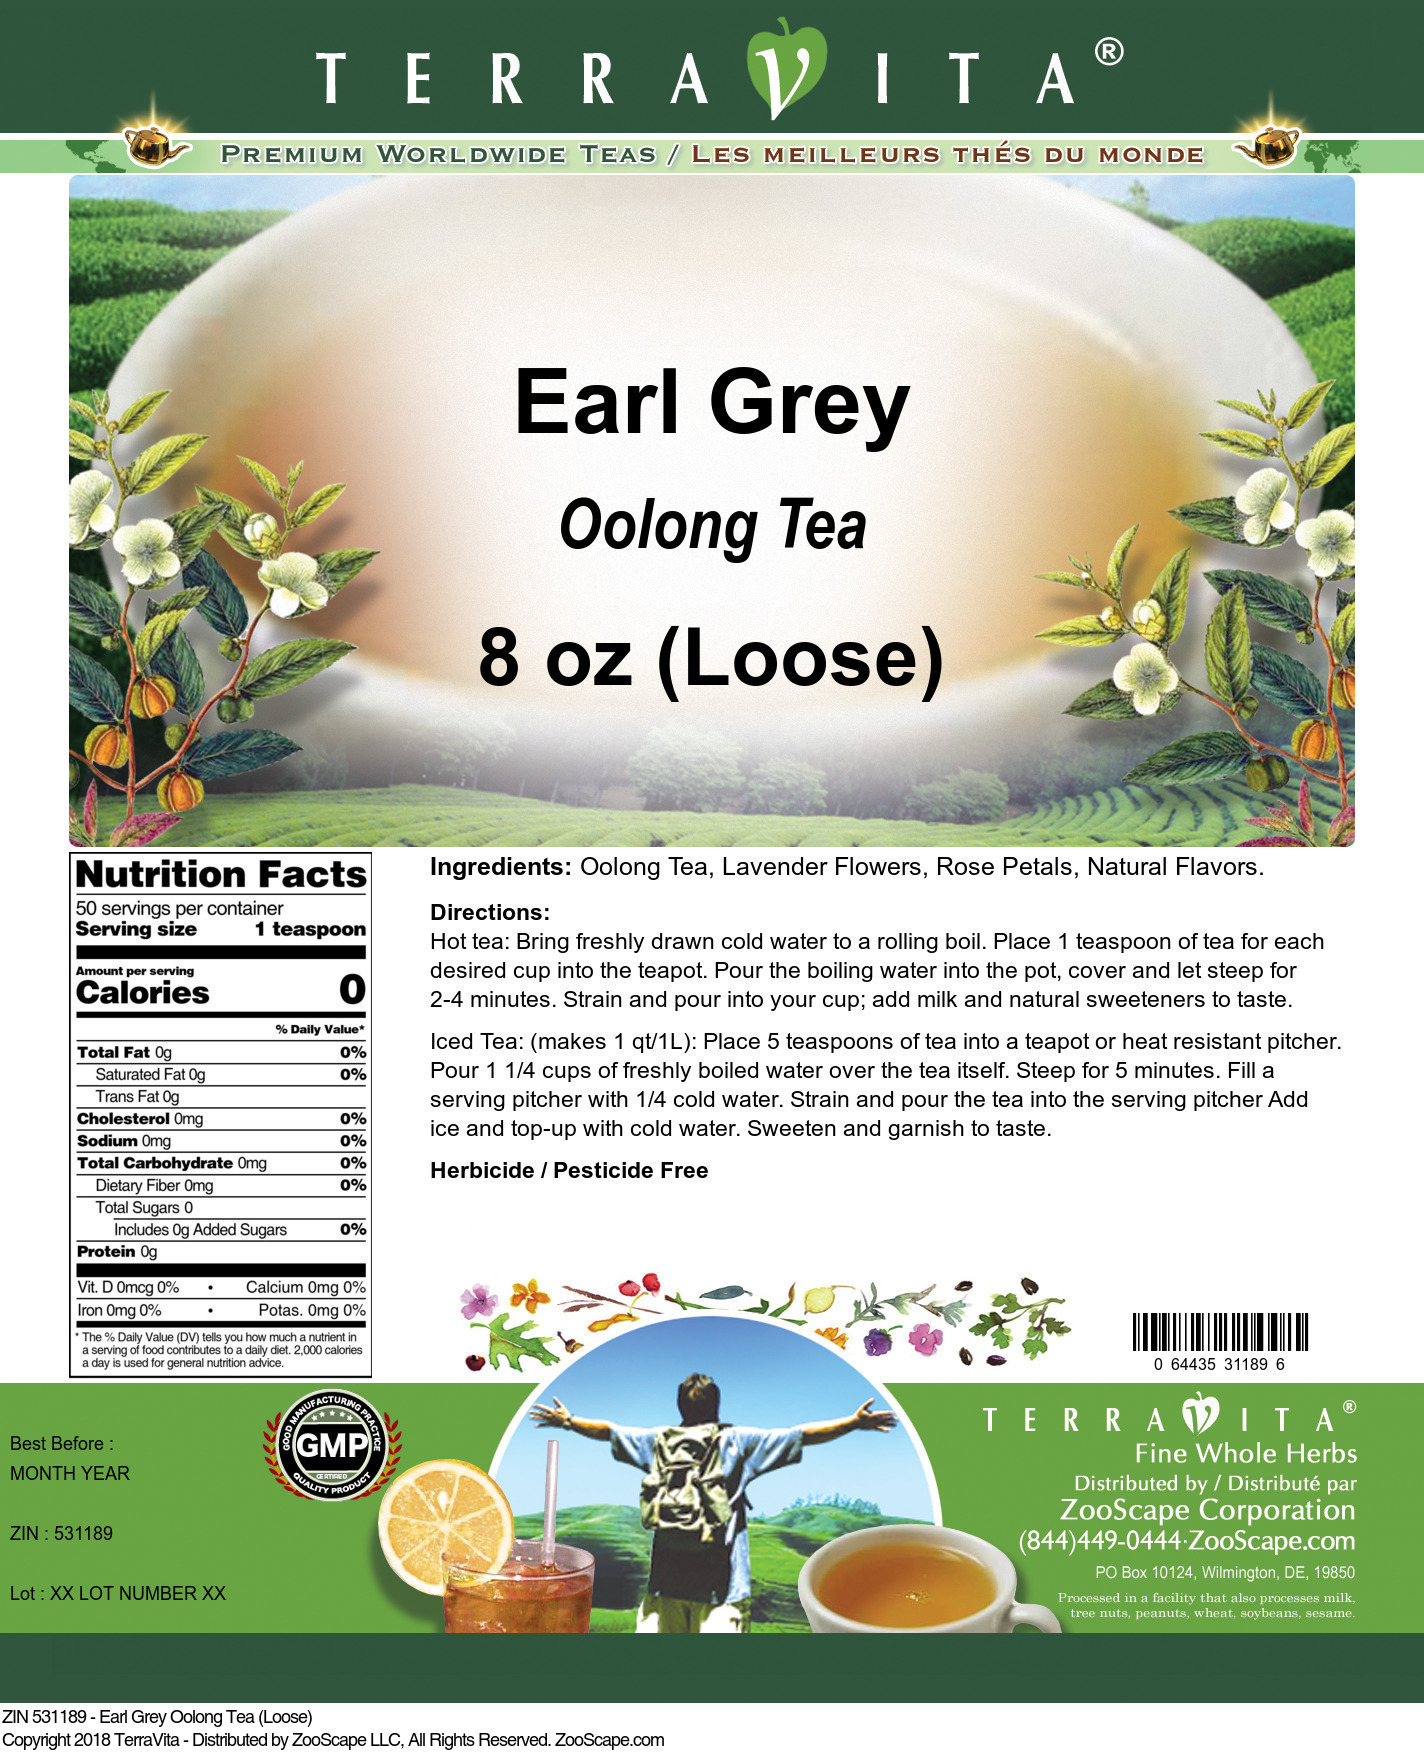 Earl Grey Oolong Tea (Loose) - Label